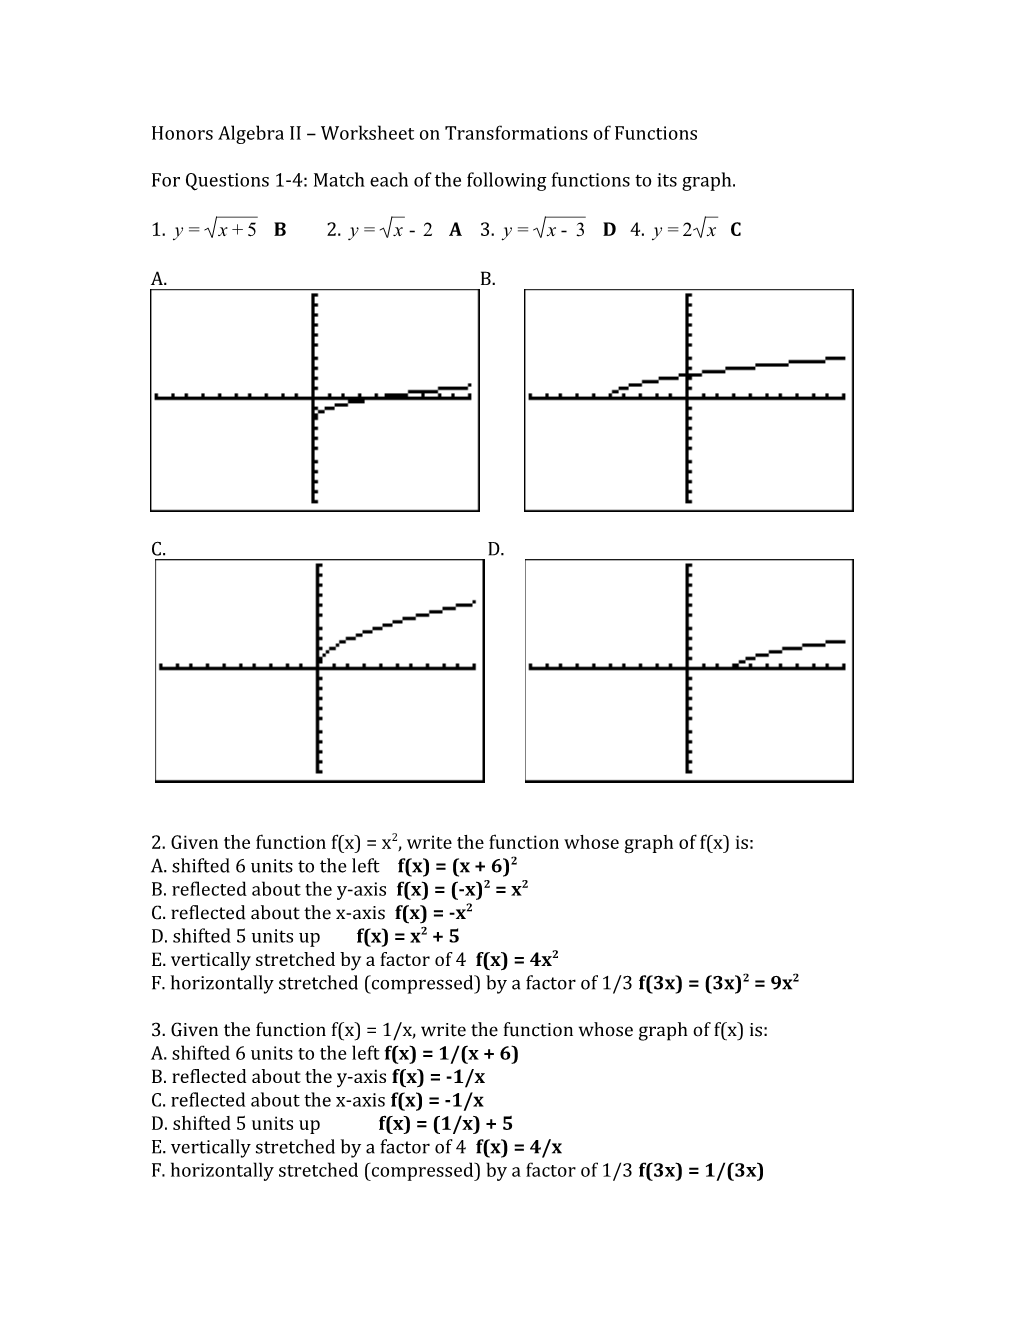 Honors Algebra II Worksheet on Transformations of Functions